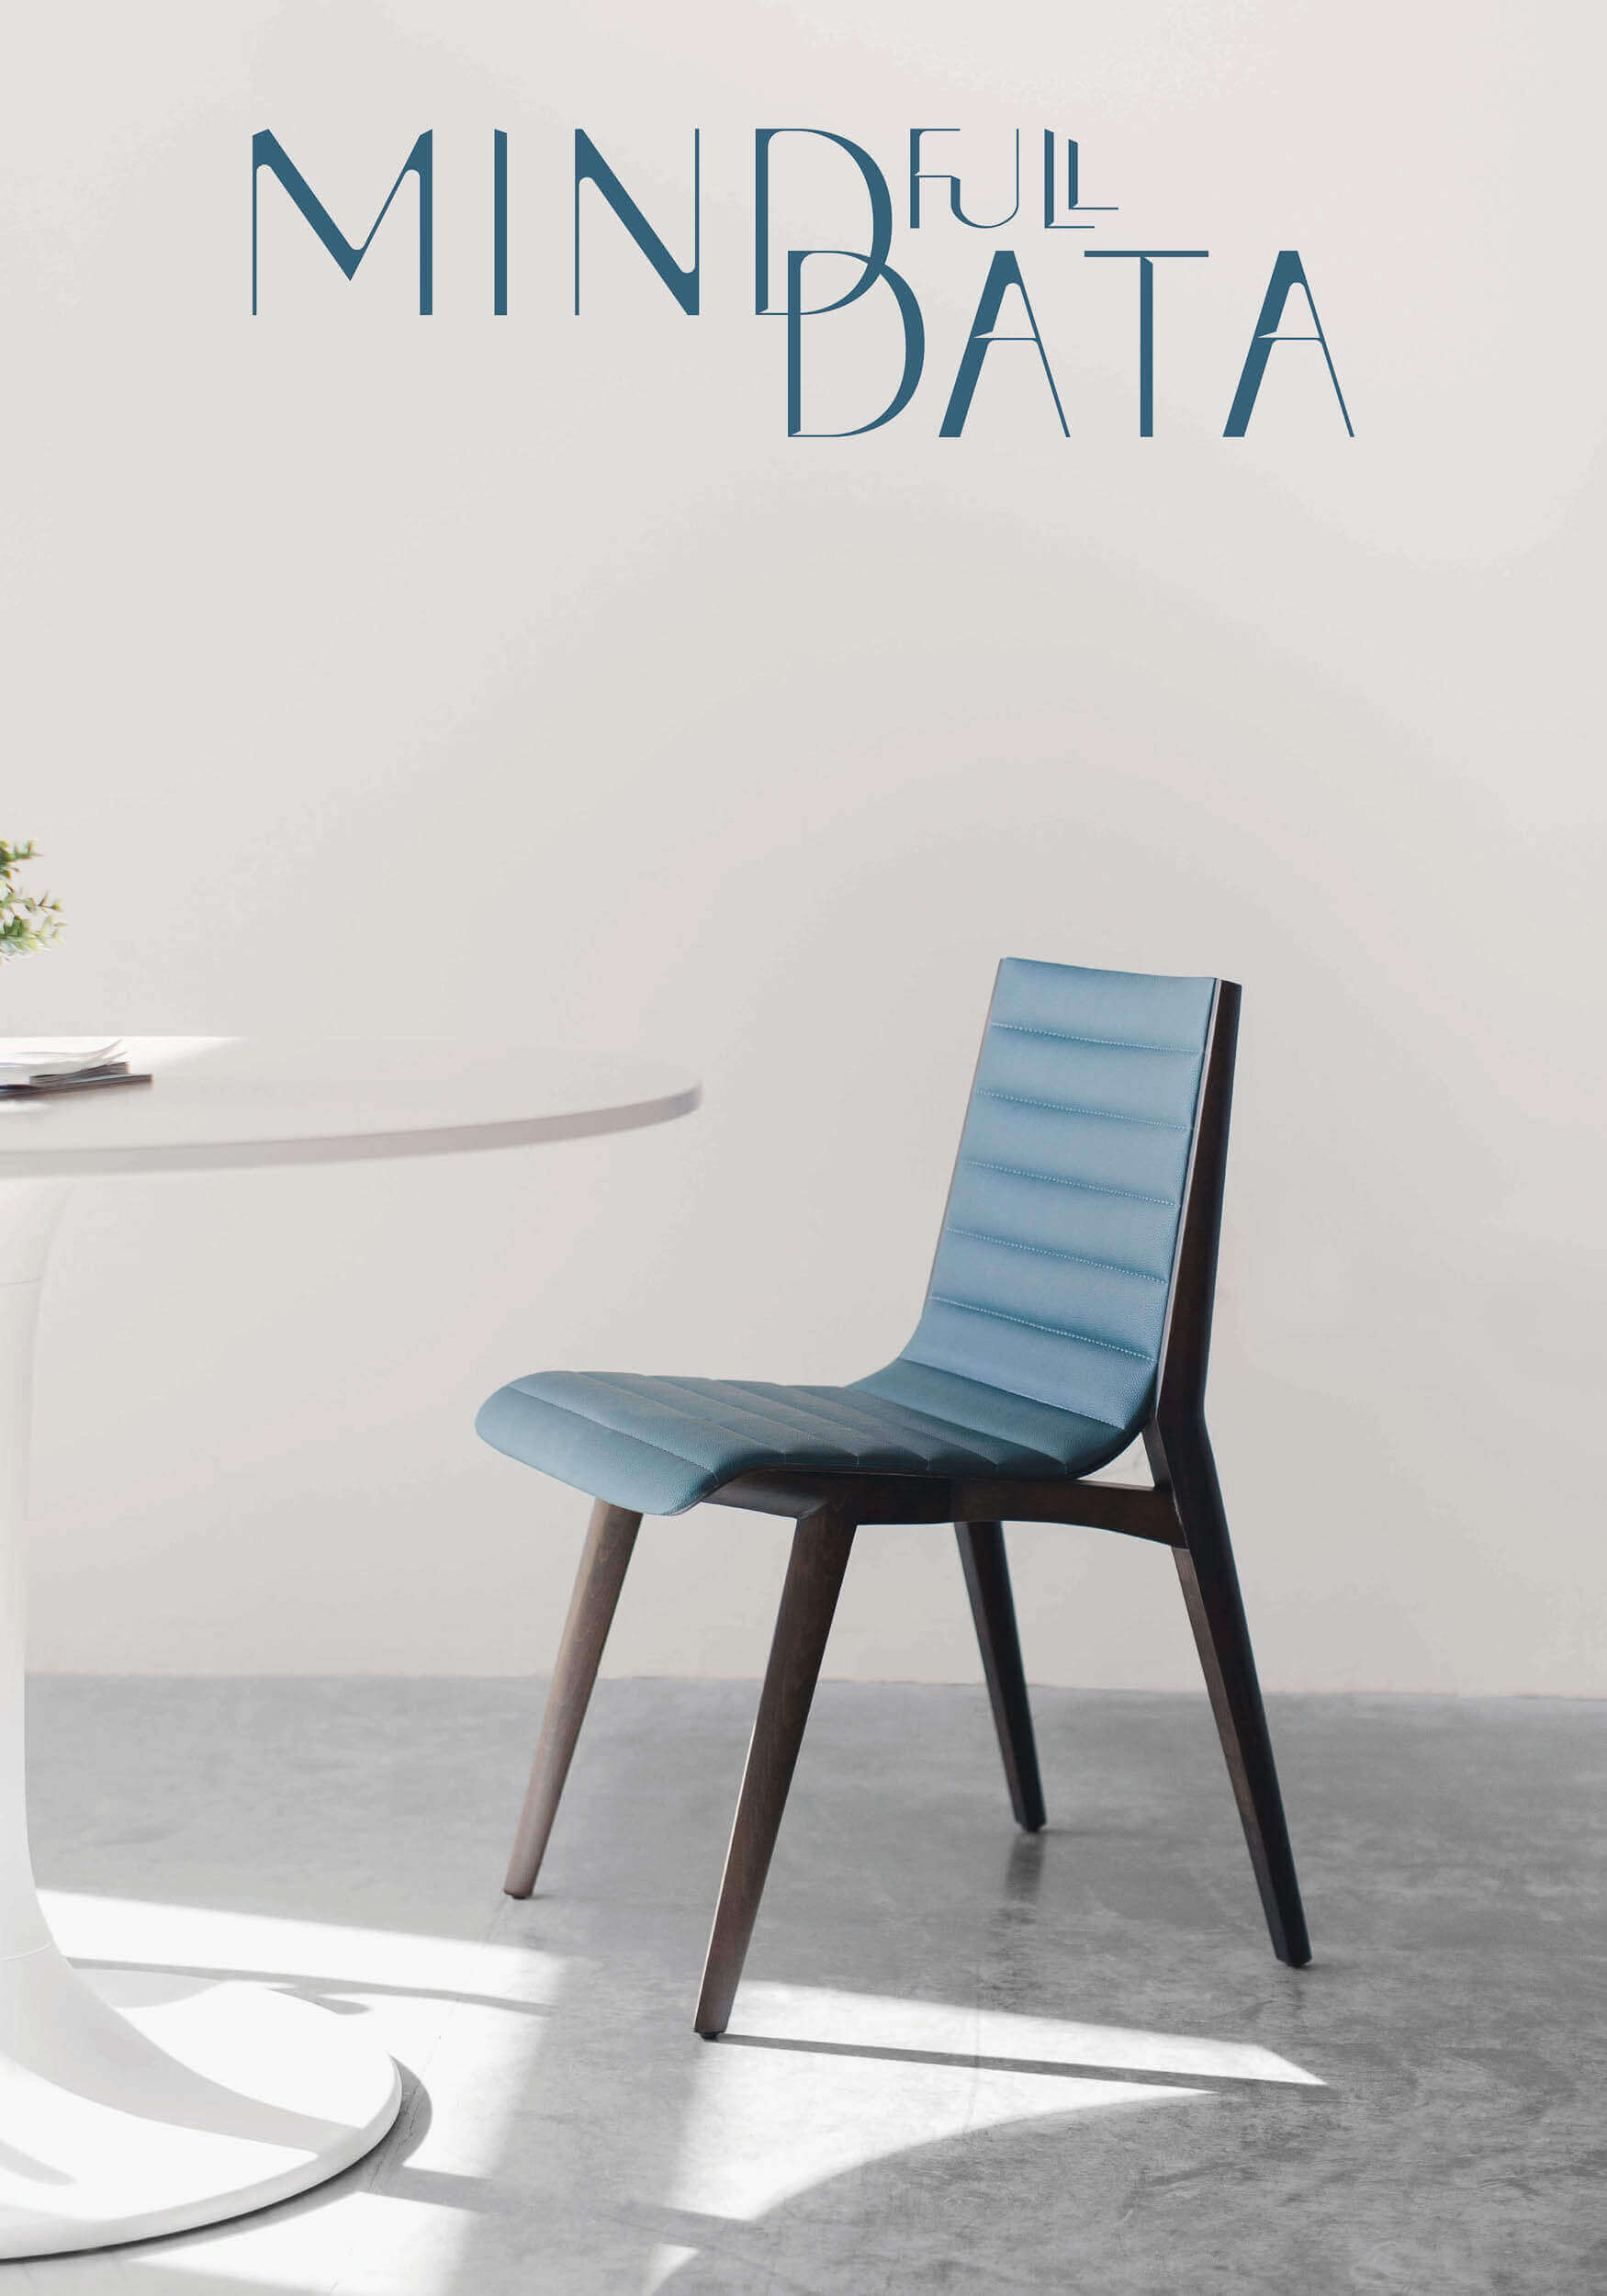 Das Brand Design von MINDfull DATA, das Logo auf einem Foto mit einem Stuhl